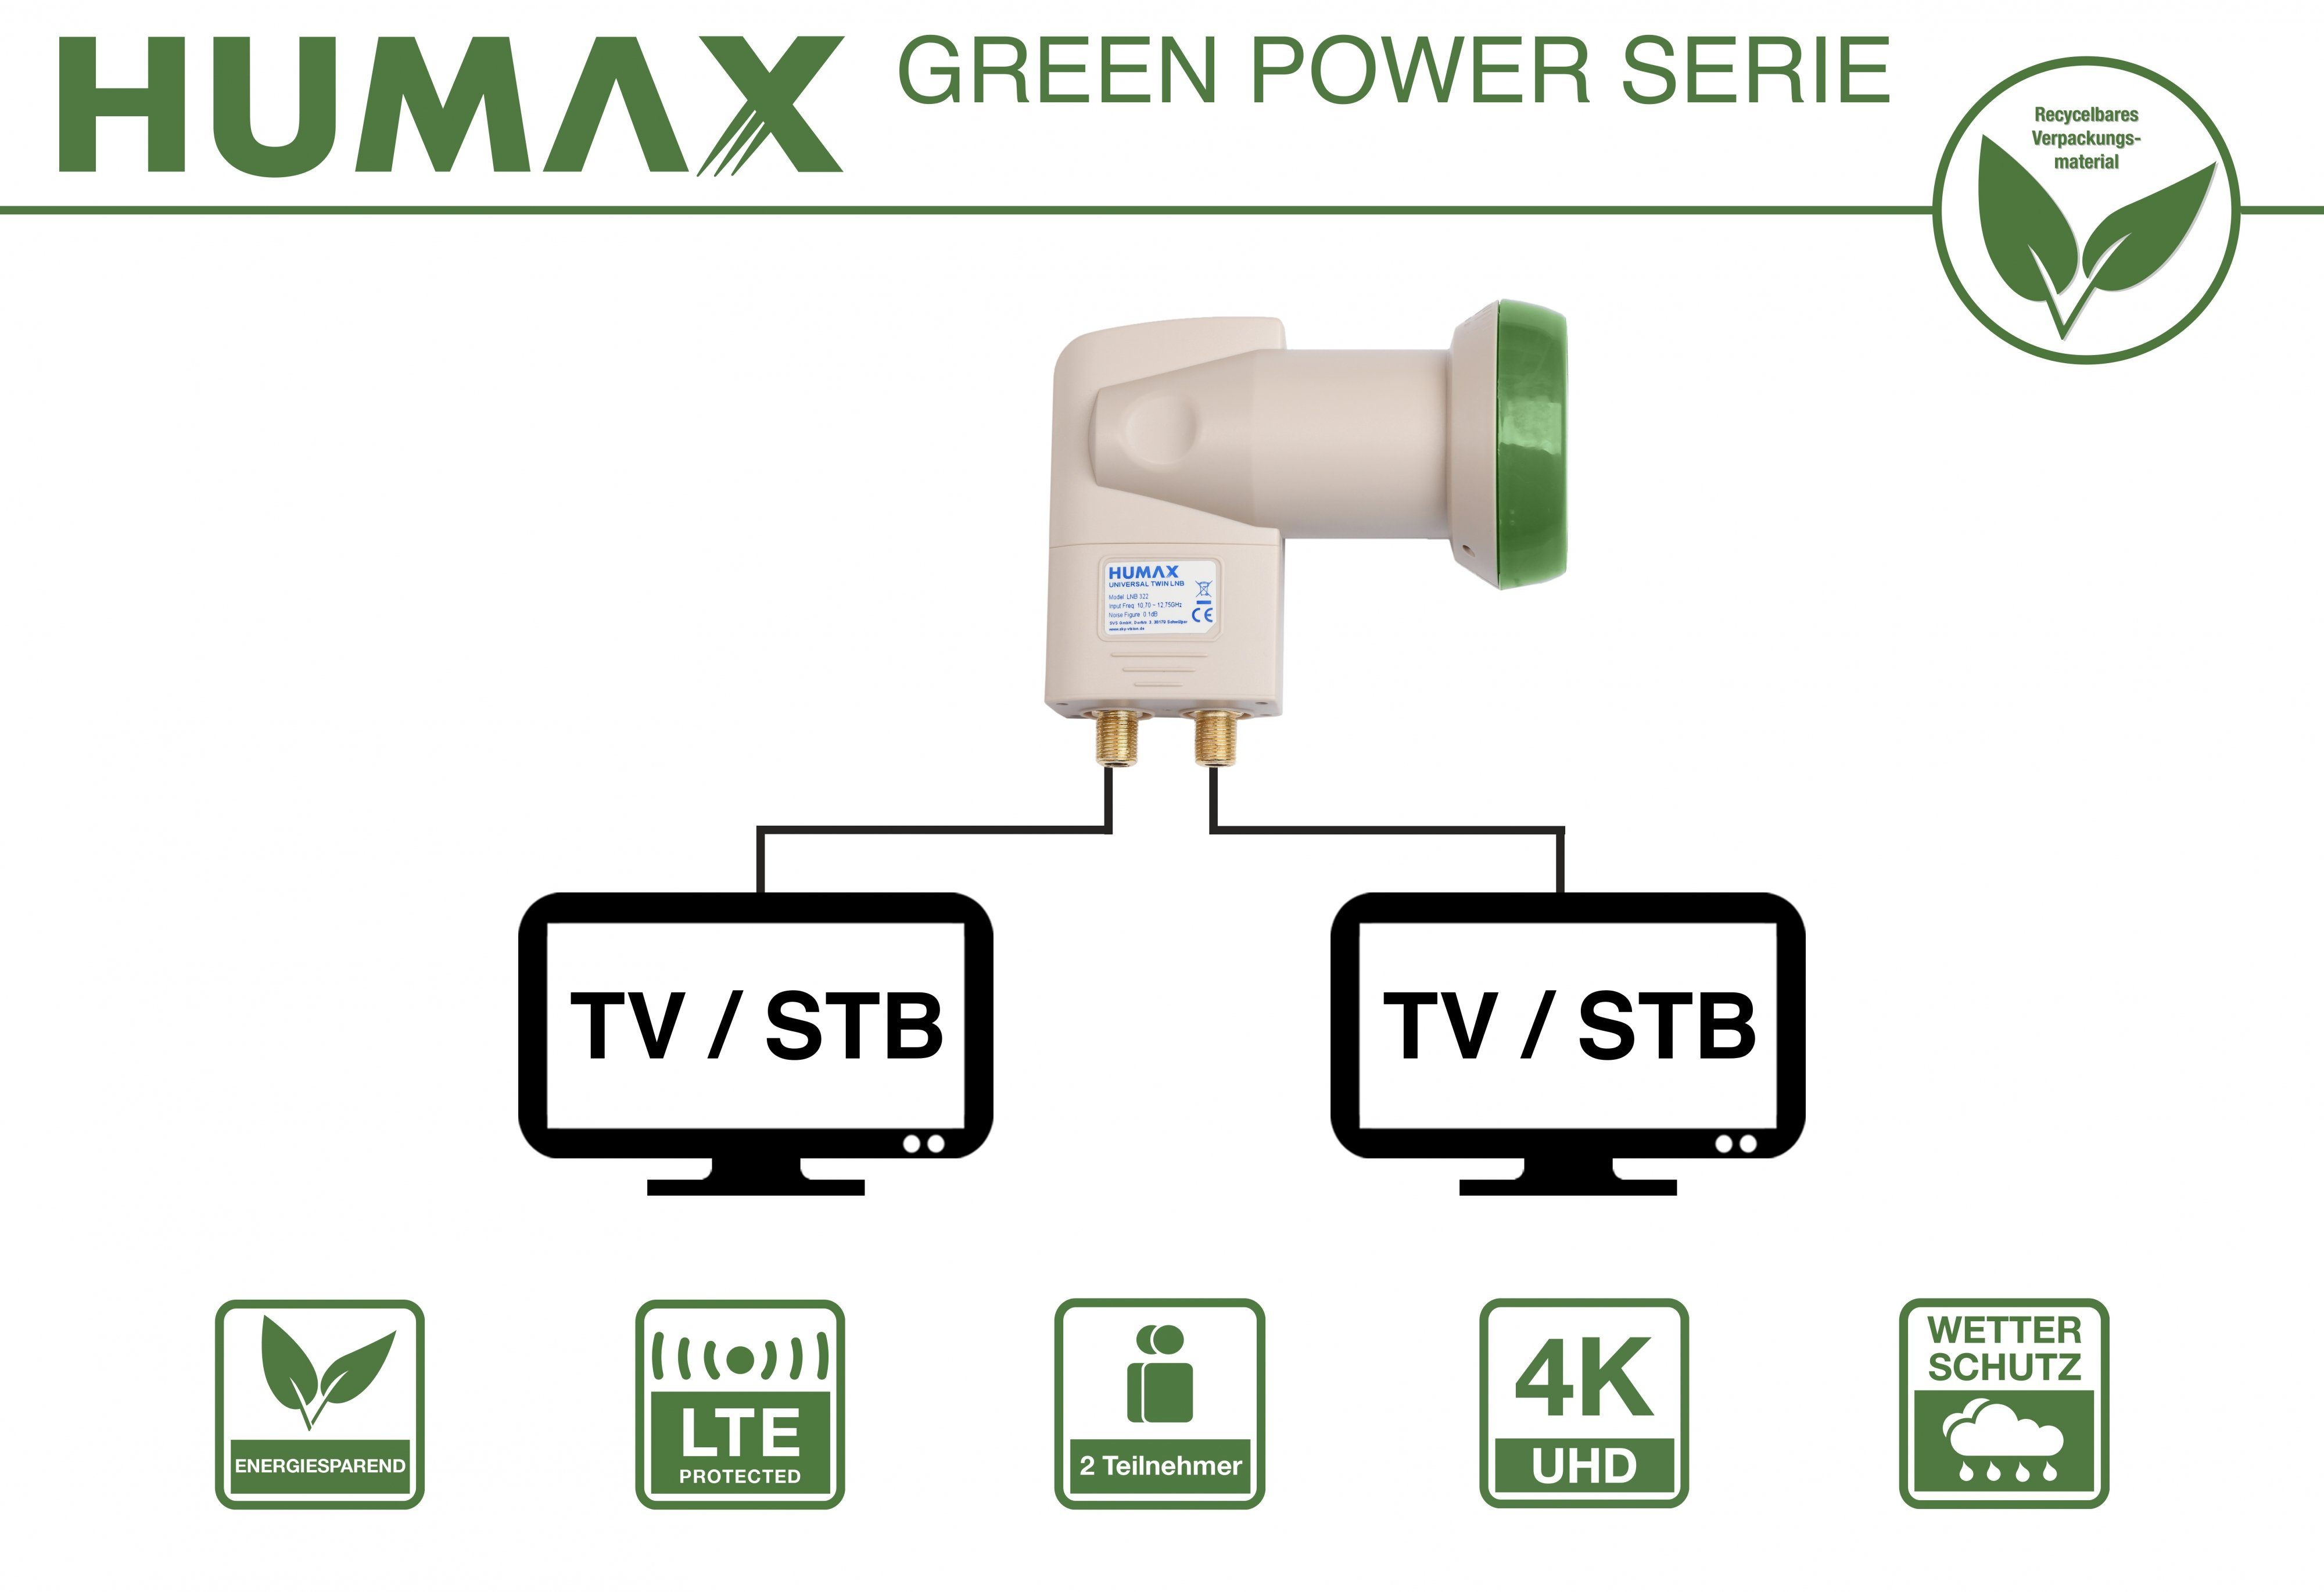 Humax Green Umweltfreundliche Power (für stromsparend Universal-Twin-LNB 322, Twin-LNB Teilnehmer, LTE Verpackung, 2 Filter)